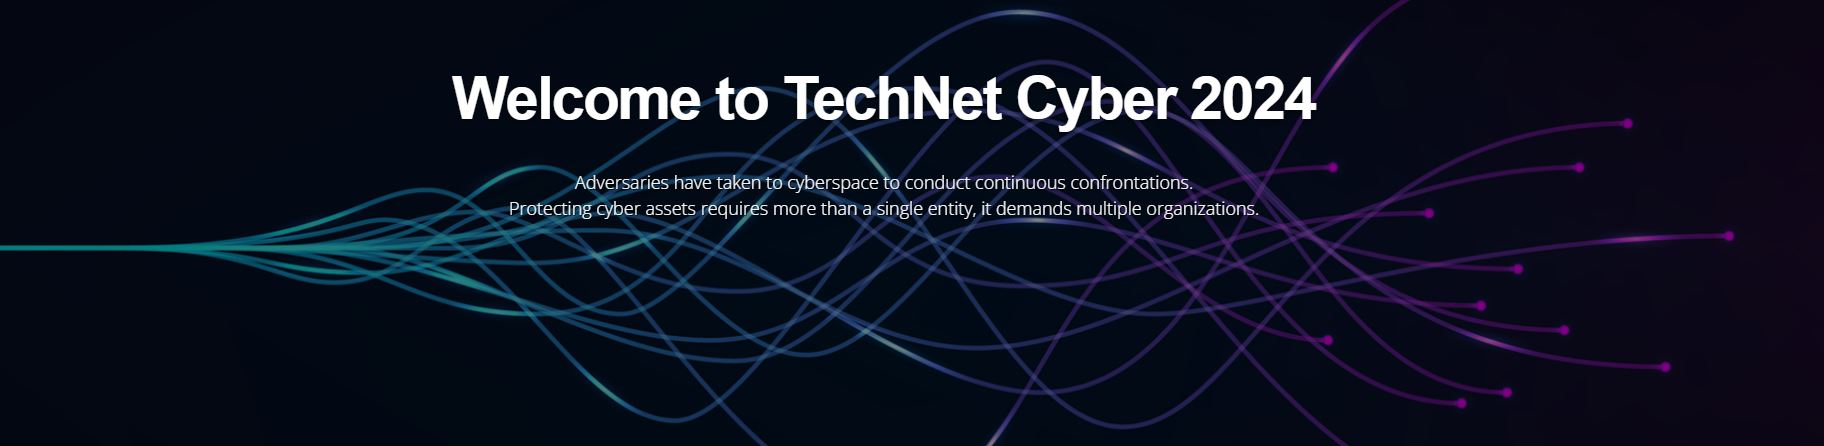 technet Cyber 2024